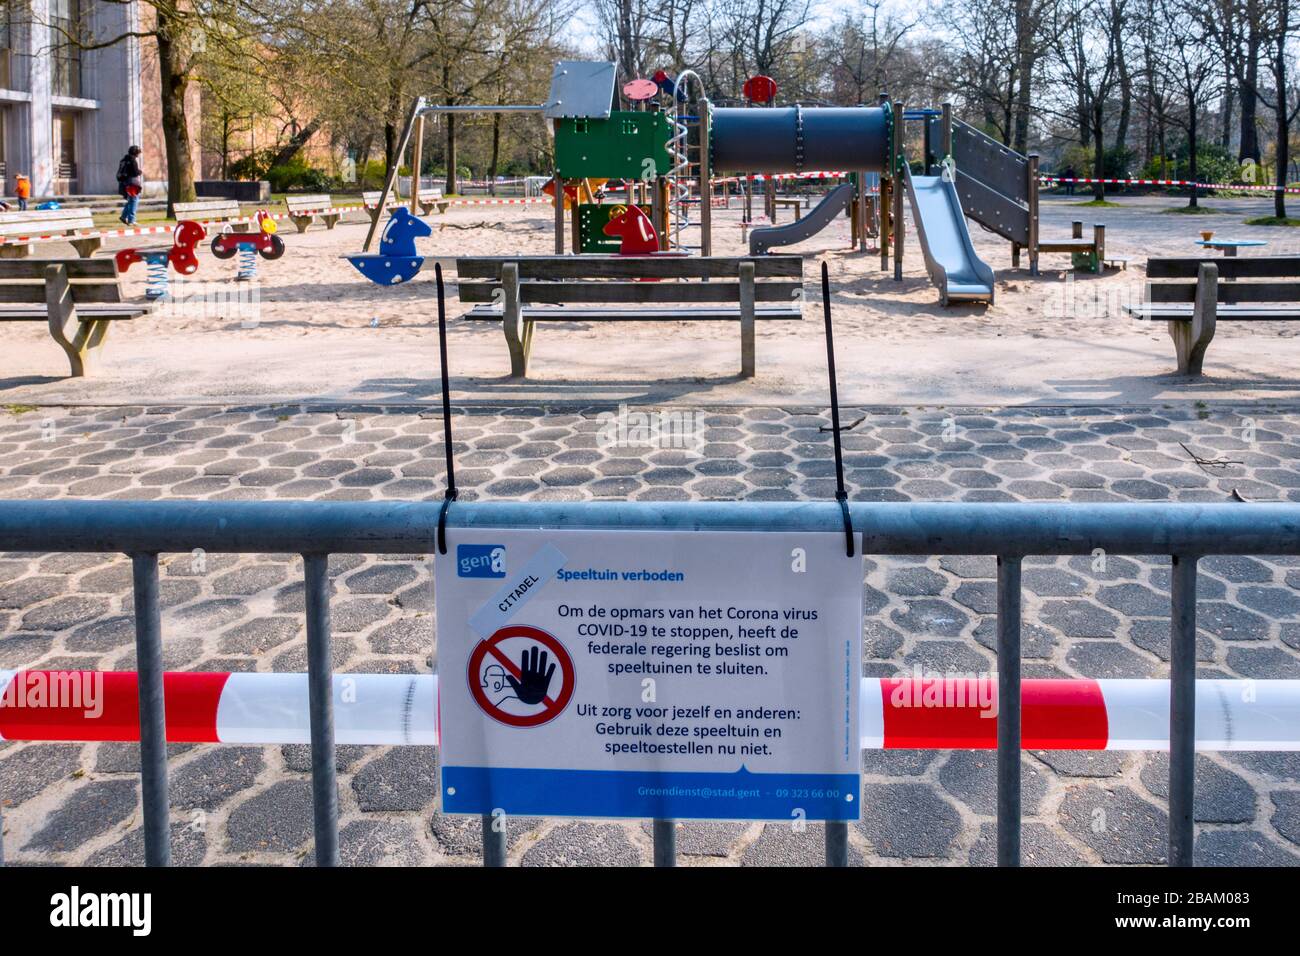 L'aire de jeux pour enfants publics déserte est fermée et obstruée par des bandes en raison de la pandémie du virus COVID-19 / coronavirus / corona 2020 Banque D'Images